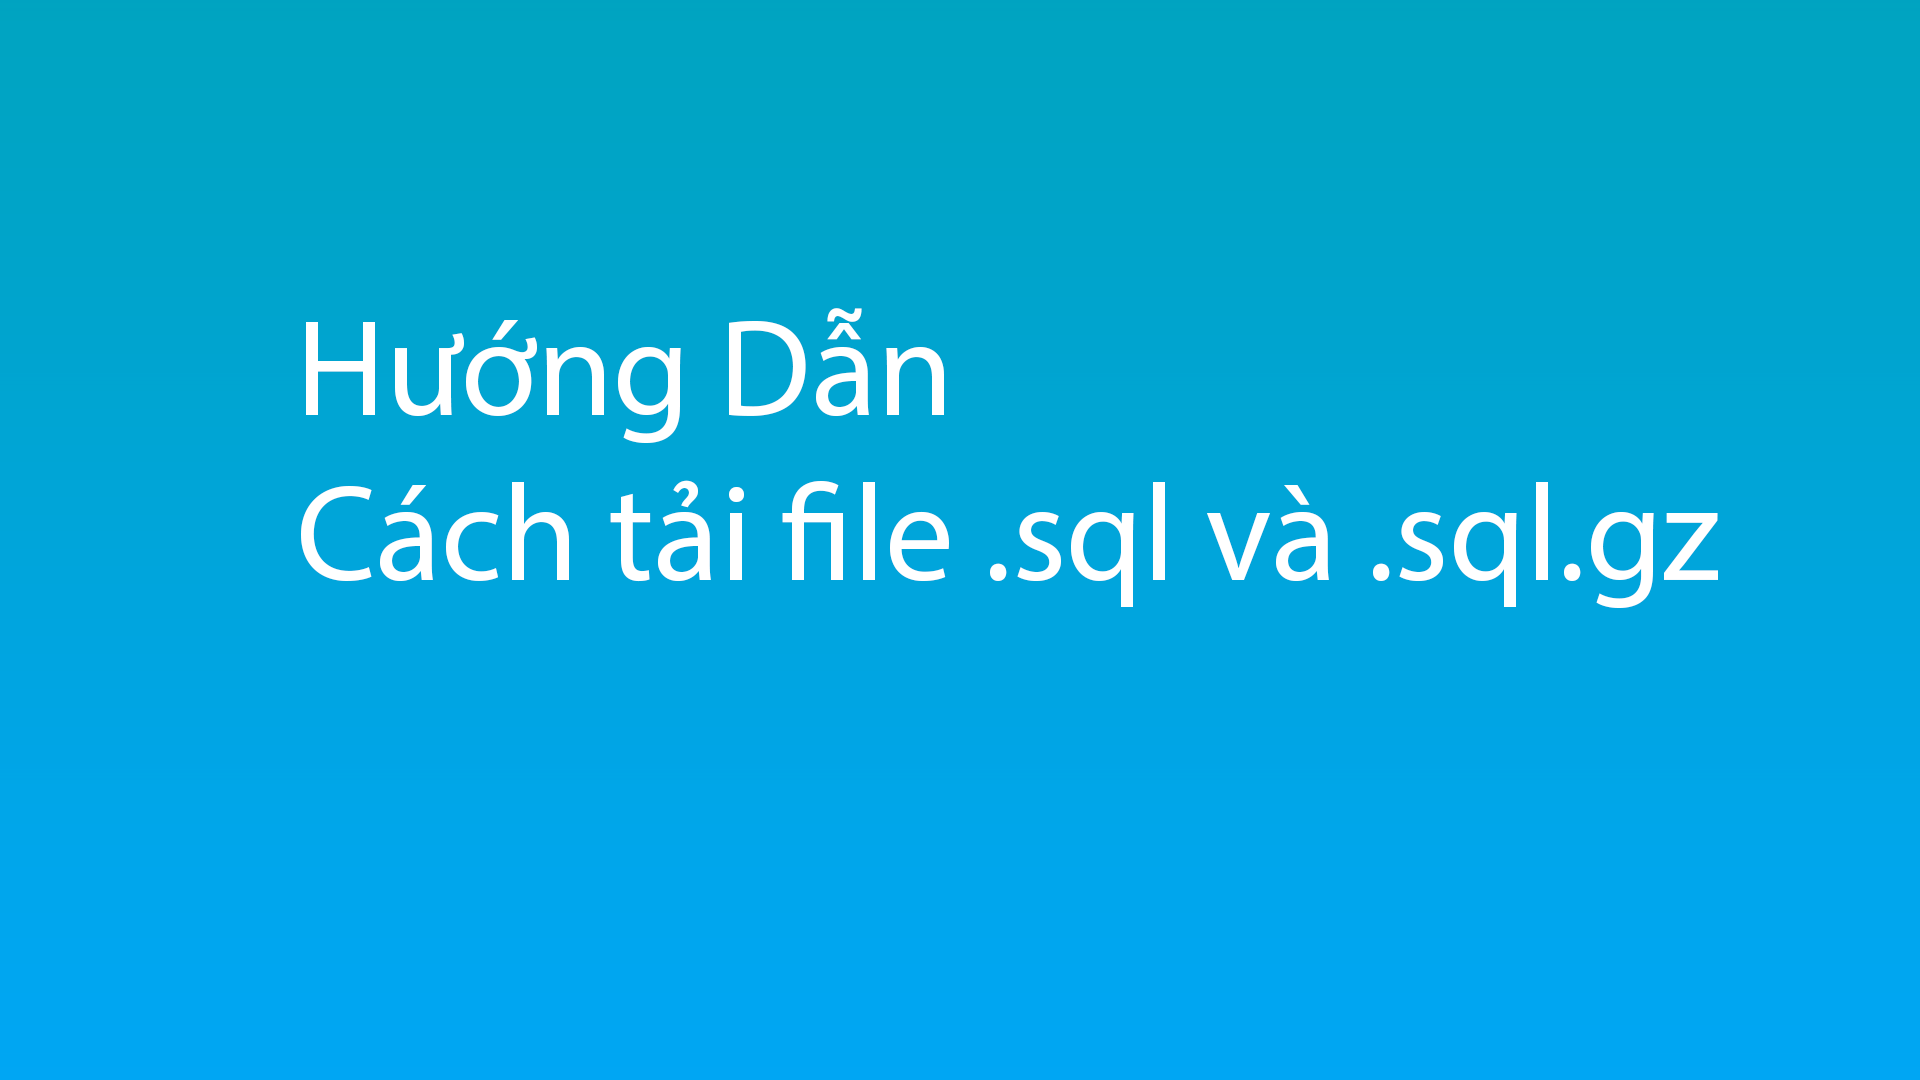 Hướng dẫn cách tải file Database đuôi SQL cho Hosting Cpanel, DirectAdmin